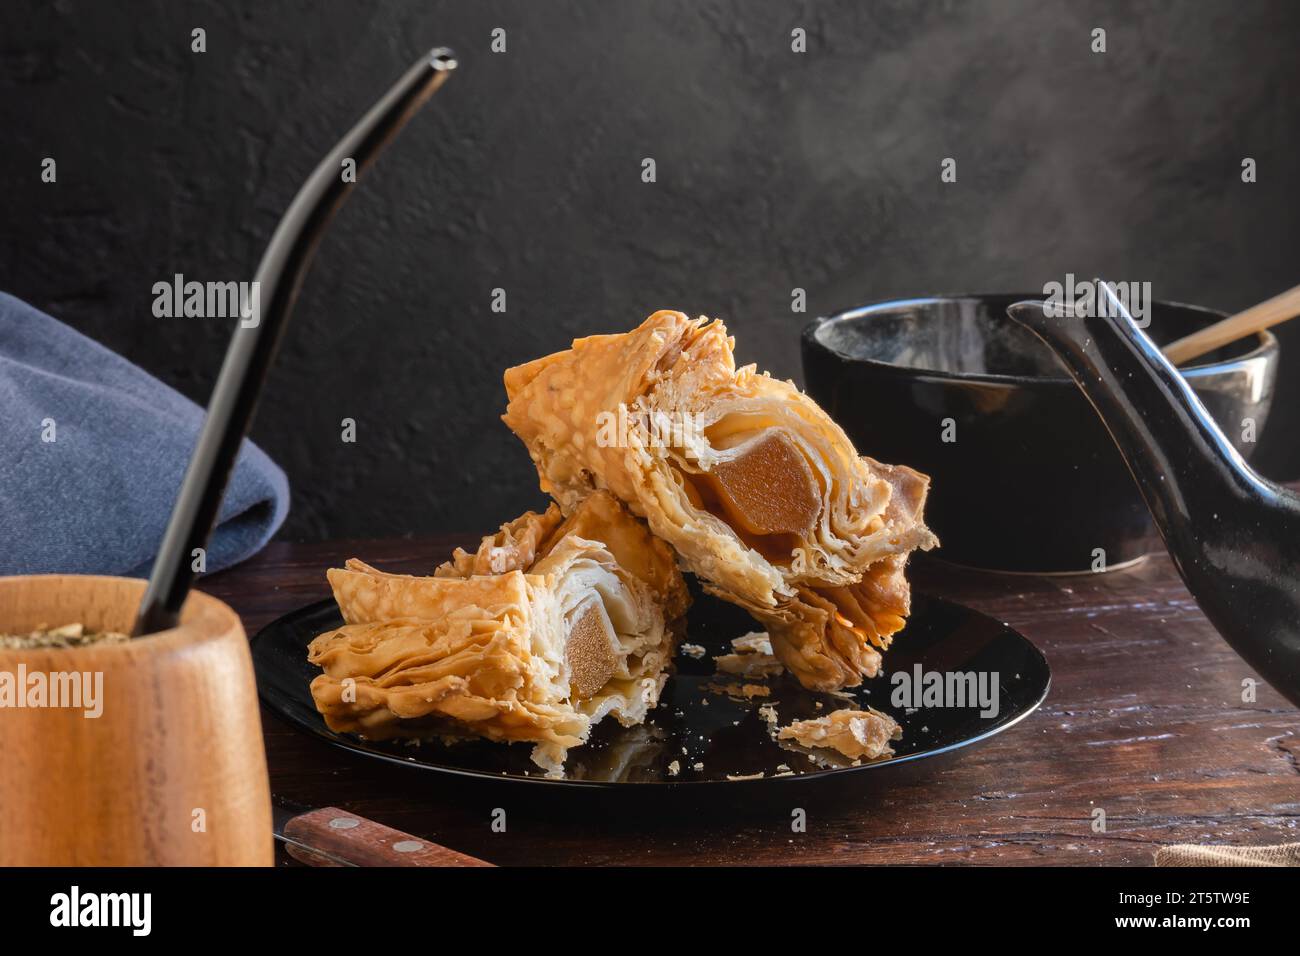 Pastelito argentino tagliato a metà dove è possibile vedere le caramelle di patate dolci all'interno. Foto Stock